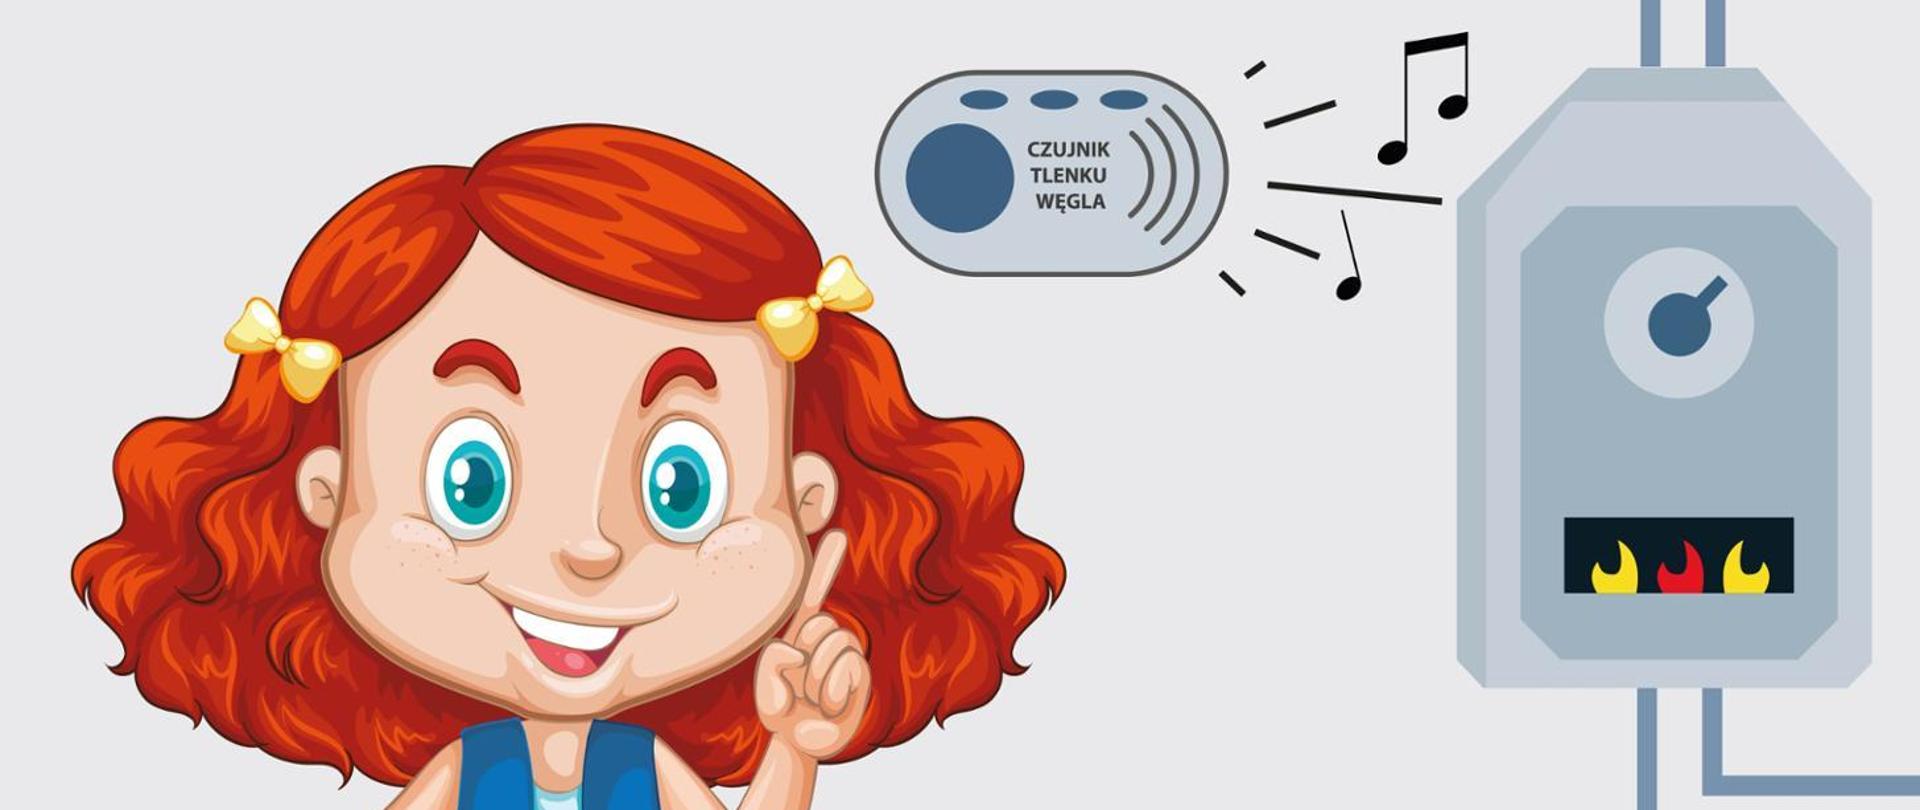 Grafika. Rudowłosa dziewczynka z kokardkami we włosach wskazująca na czujkę tlenku węgla. Obok widoczny piecyk gazowy